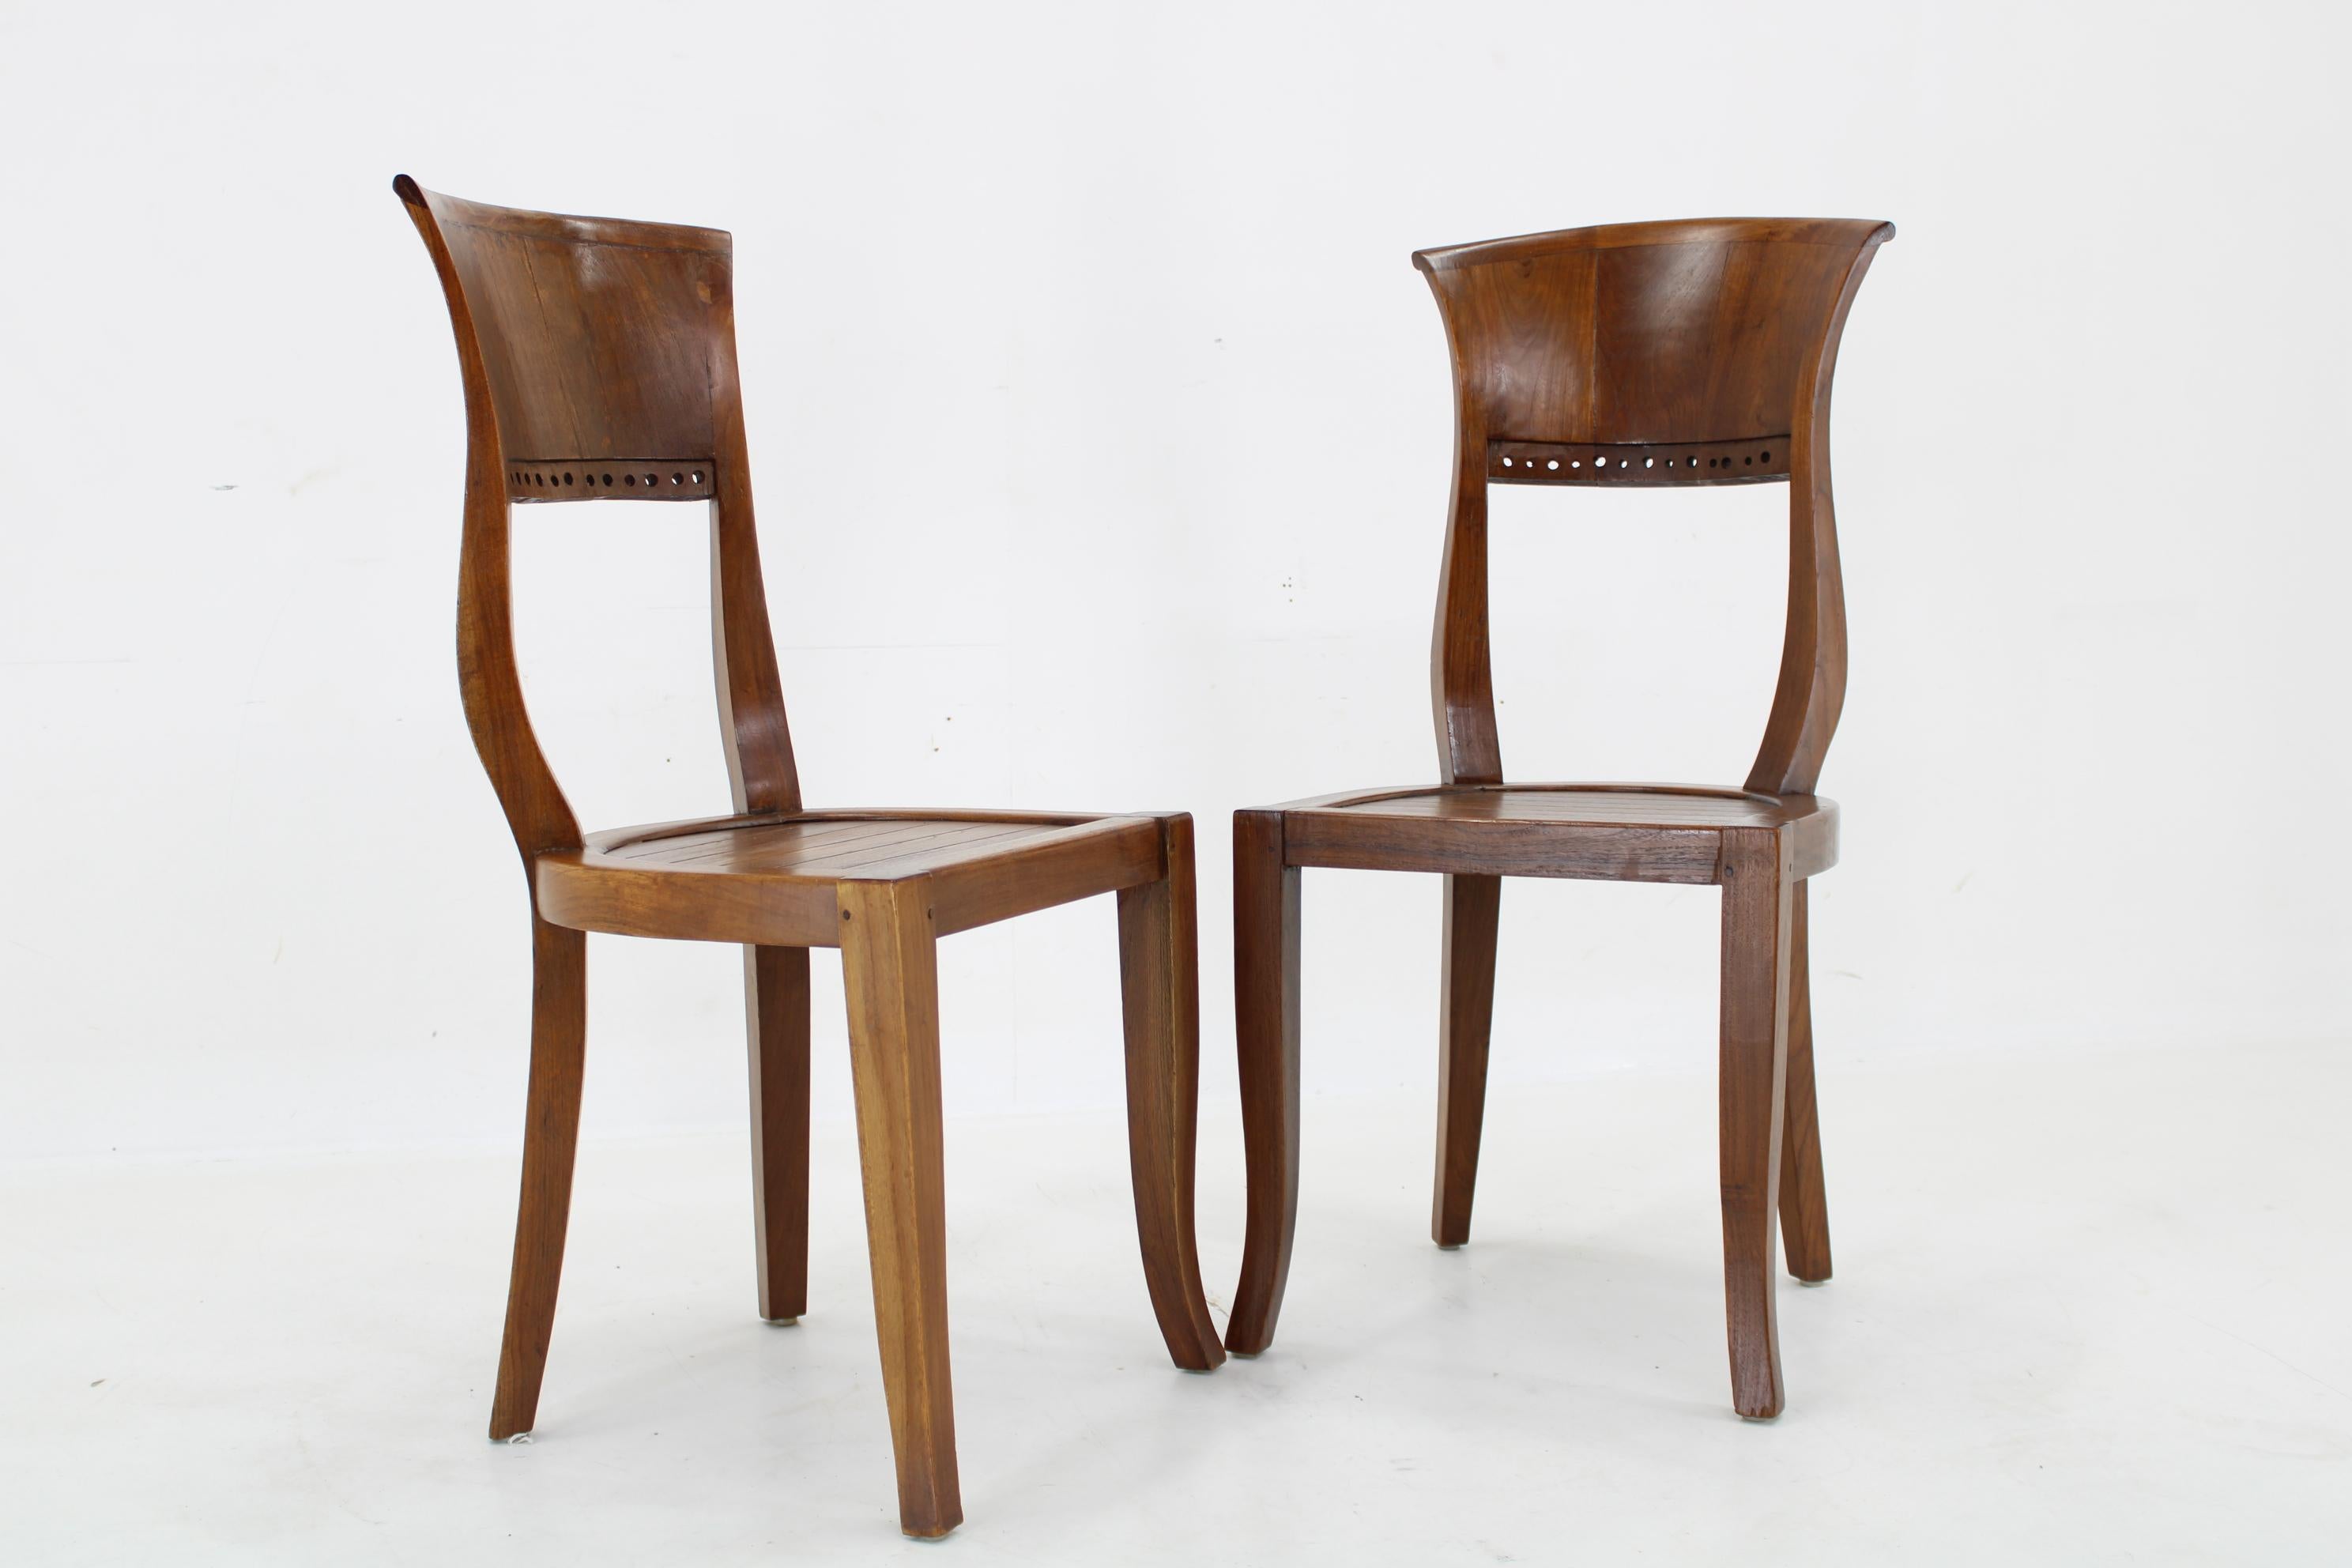 - Teilweise renoviert 
- Guter Zustand mit geringen Gebrauchsspuren  
- anderer Stuhl B:44cm  H:75cm  T:37cm 
- hoch f Sitz 47 cm